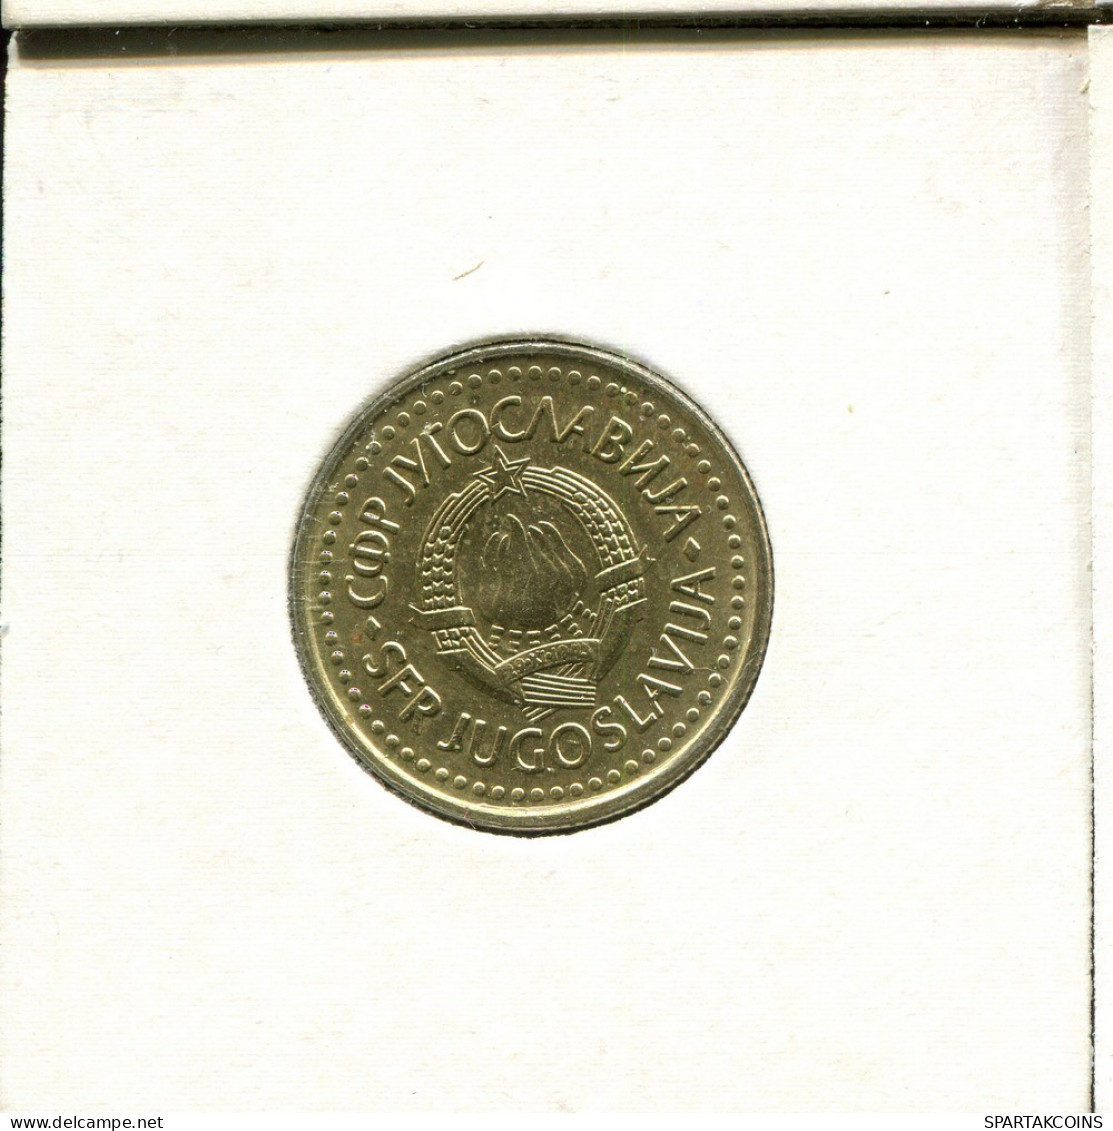 2 DINARA 1986 YUGOSLAVIA Coin #AV148.U.A - Jugoslawien